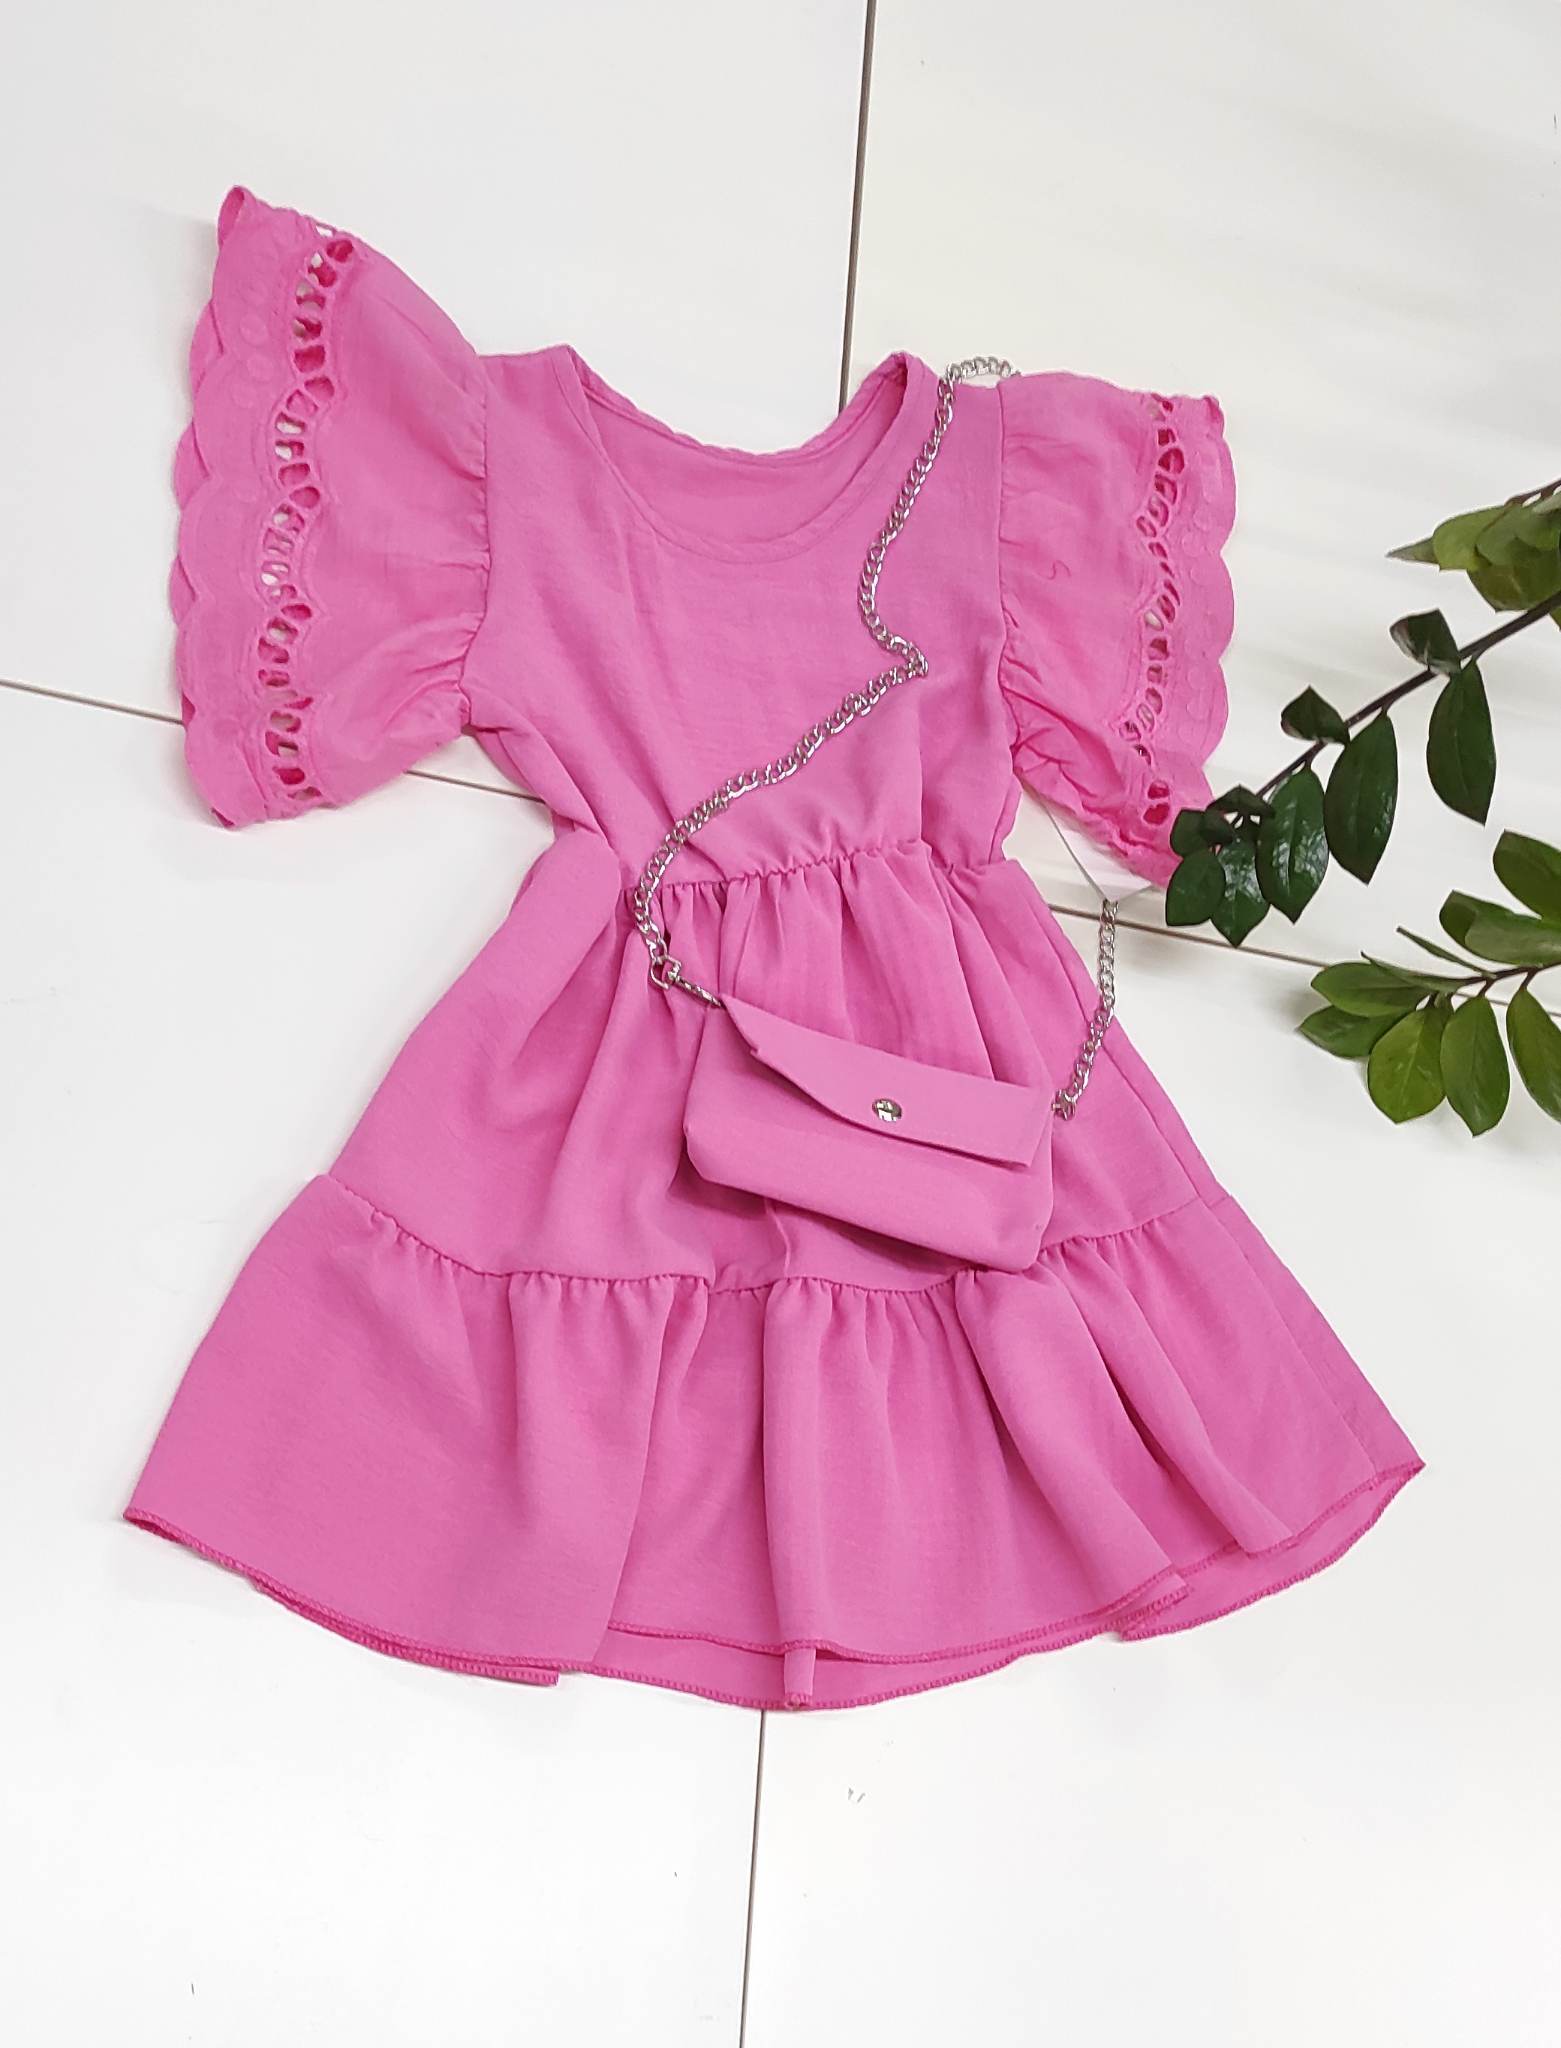 Šaty VENIC, ružové (4 - 14 rokov)